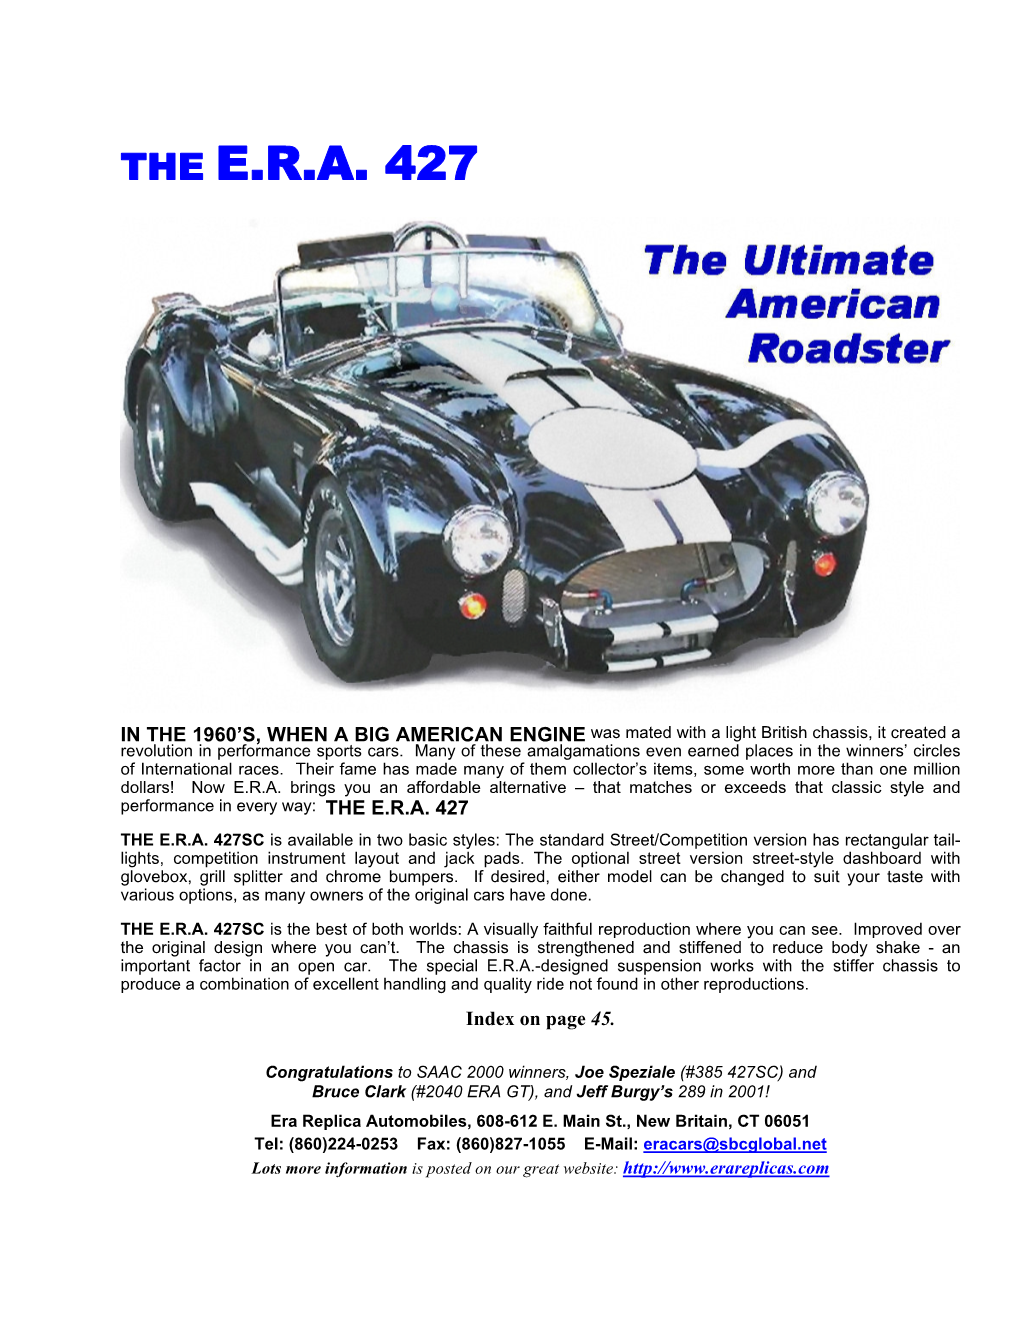 The E.R.A. 427